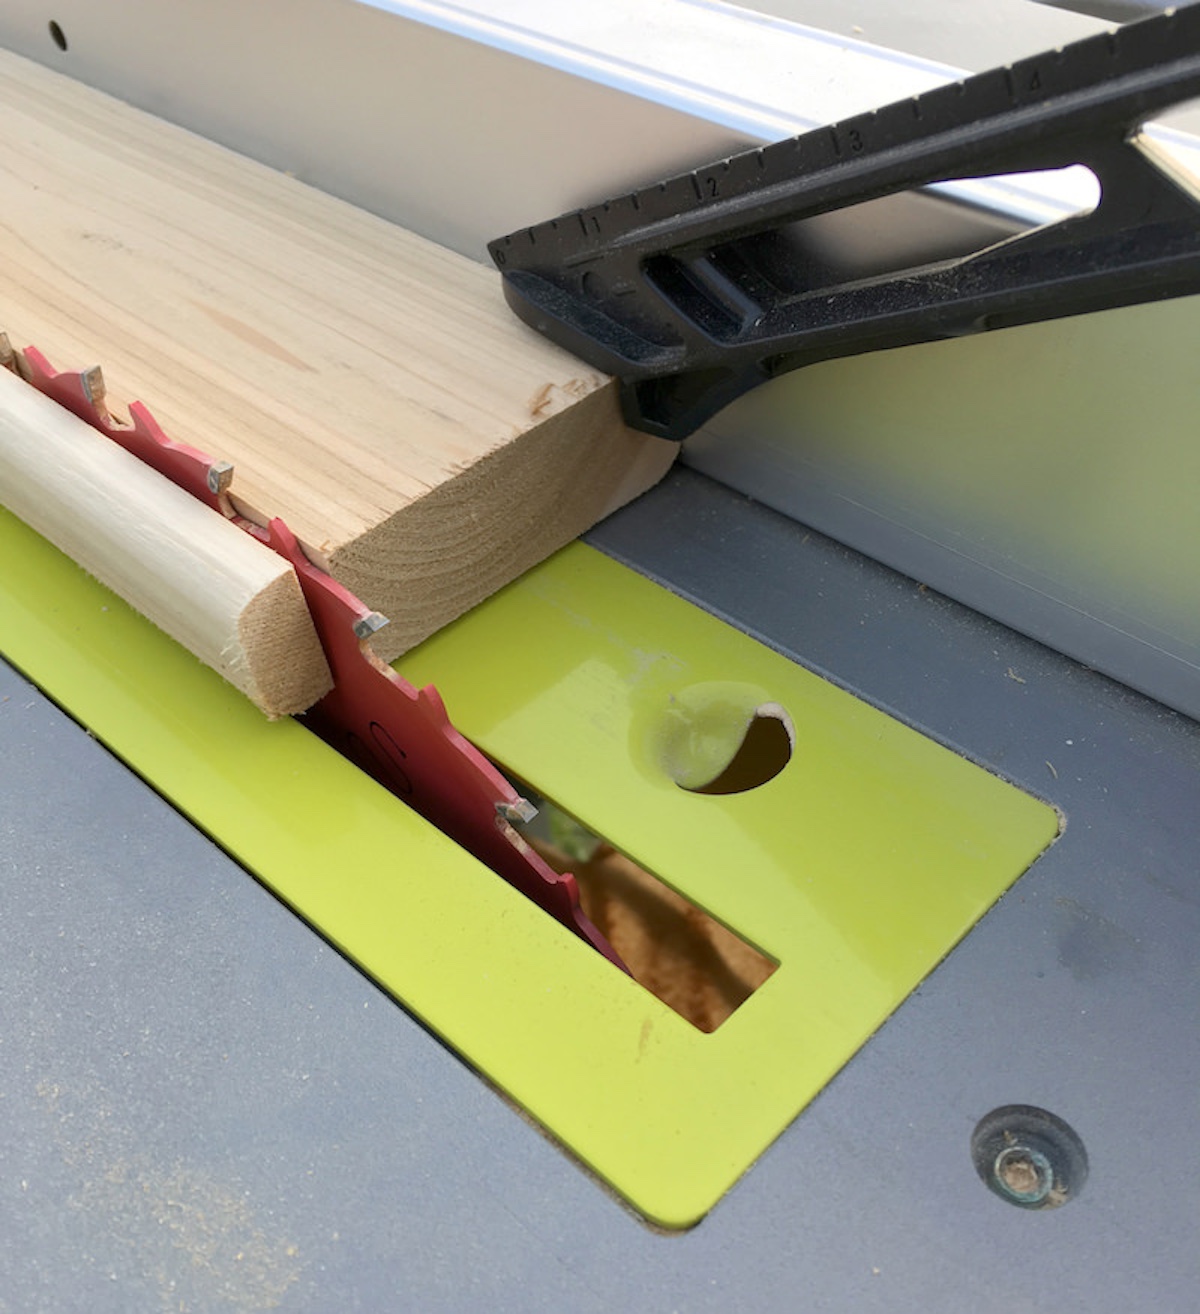 Cut one edge off a cedar plank with a table saw